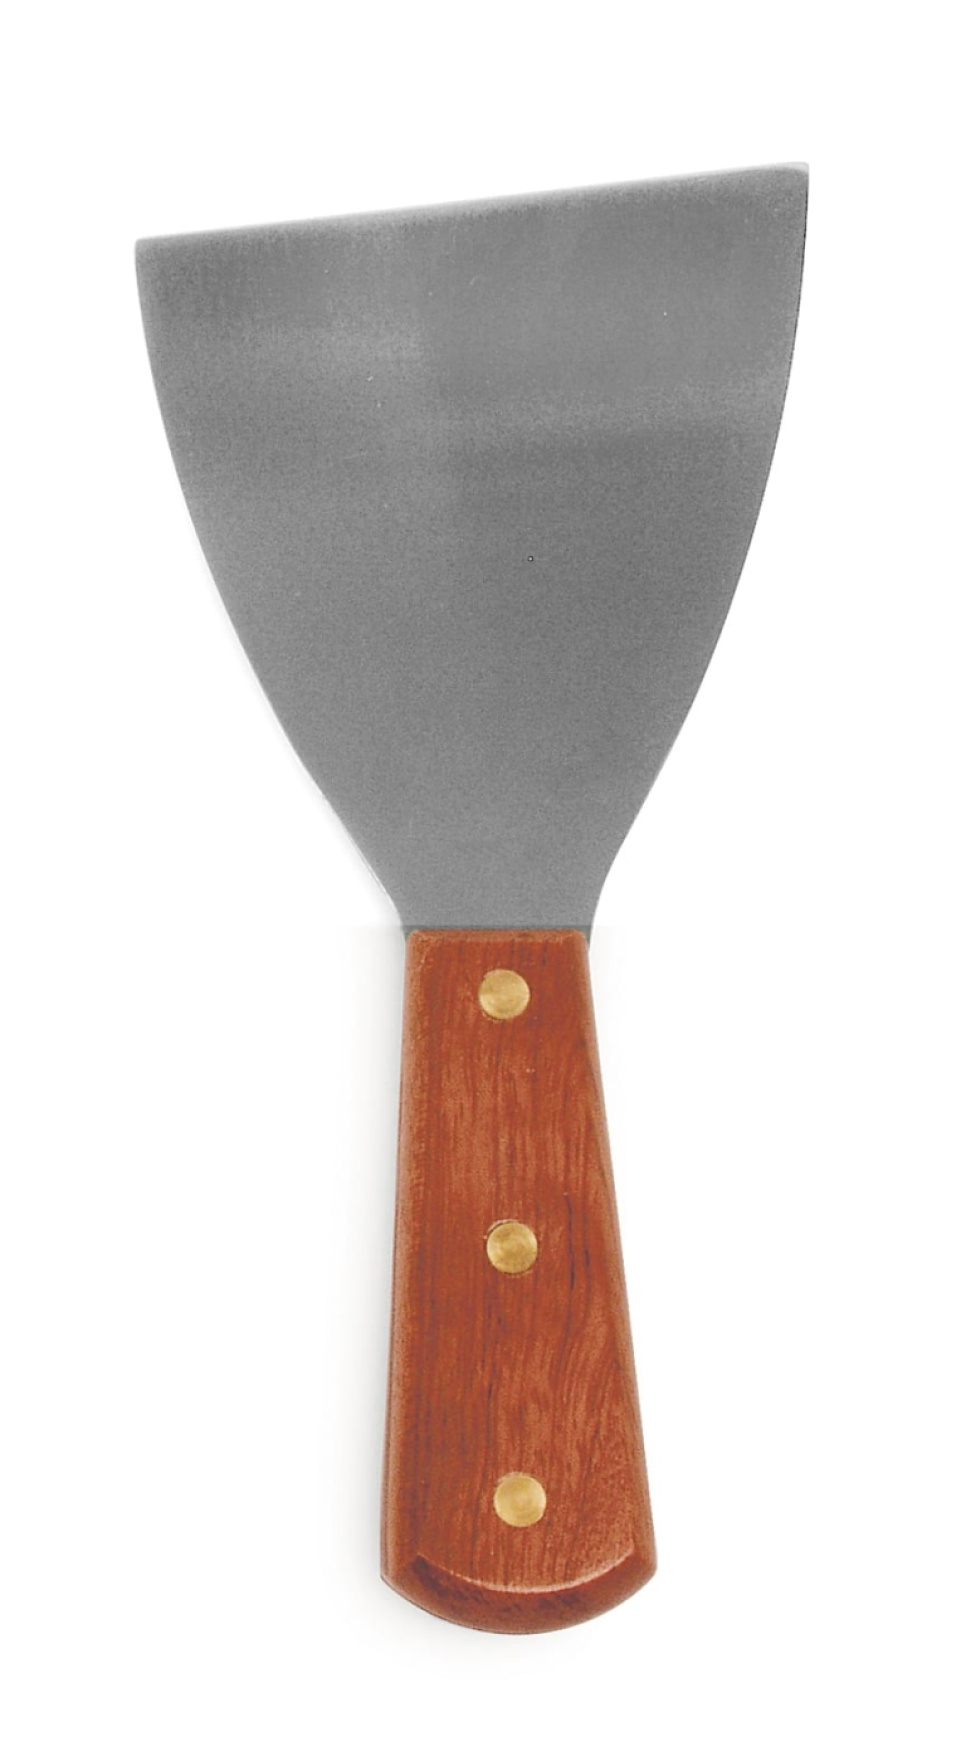 Stekbordsskrapa, 22 cm - Exxent i gruppen Matlagning / Köksredskap / Spadar & skrapor hos KitchenLab (1071-10088)